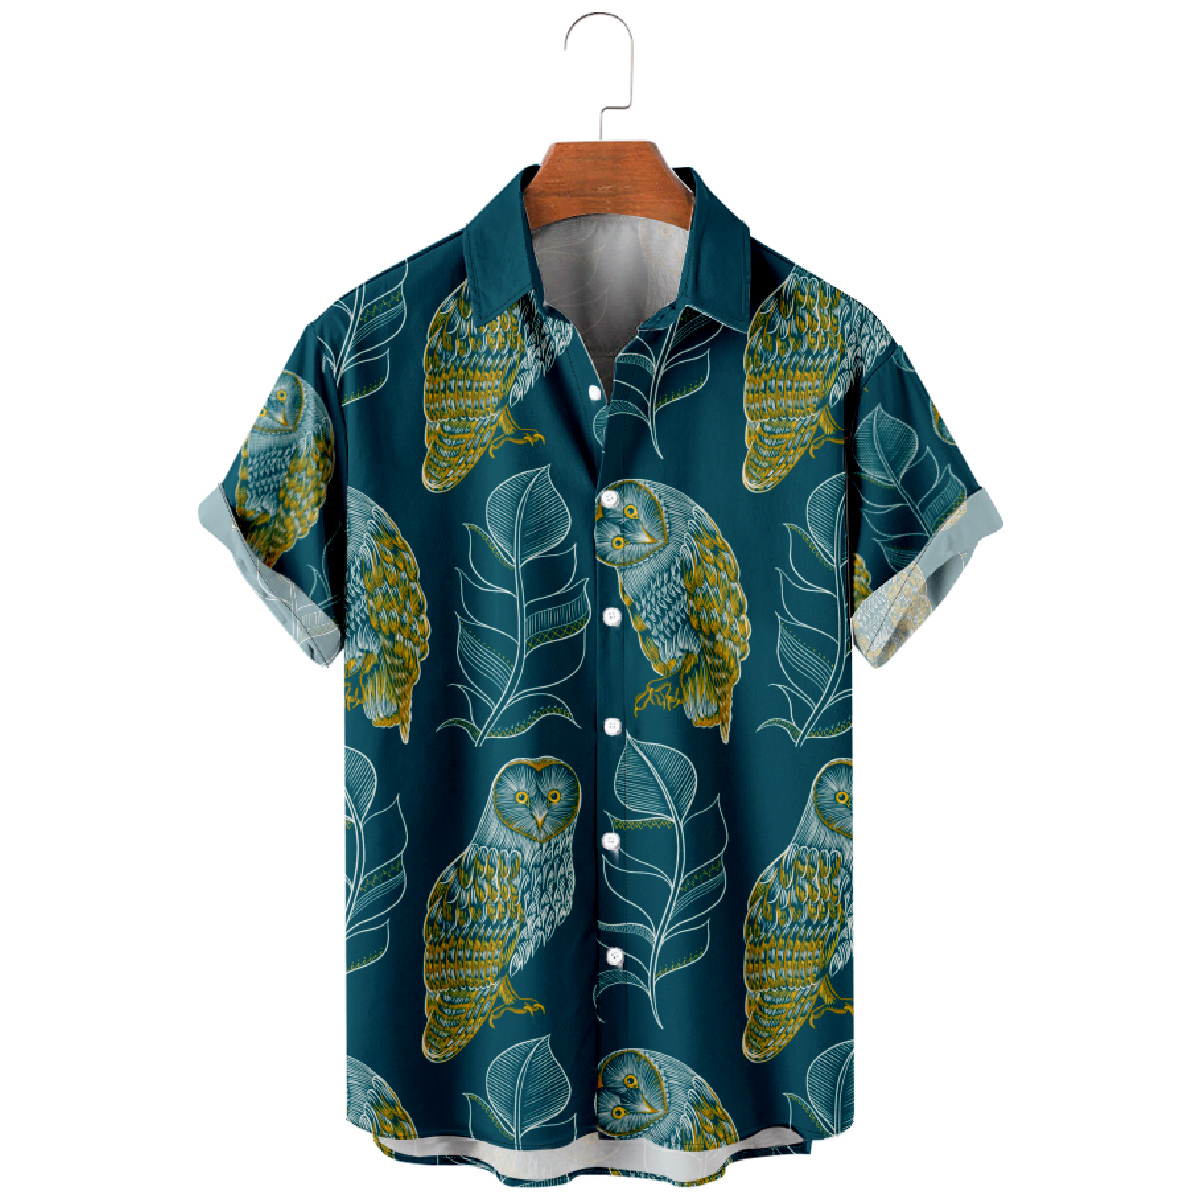 Owl Dark Green Button Up Shirt Men's Hawaiian Shirt Short Sleeve Shirt